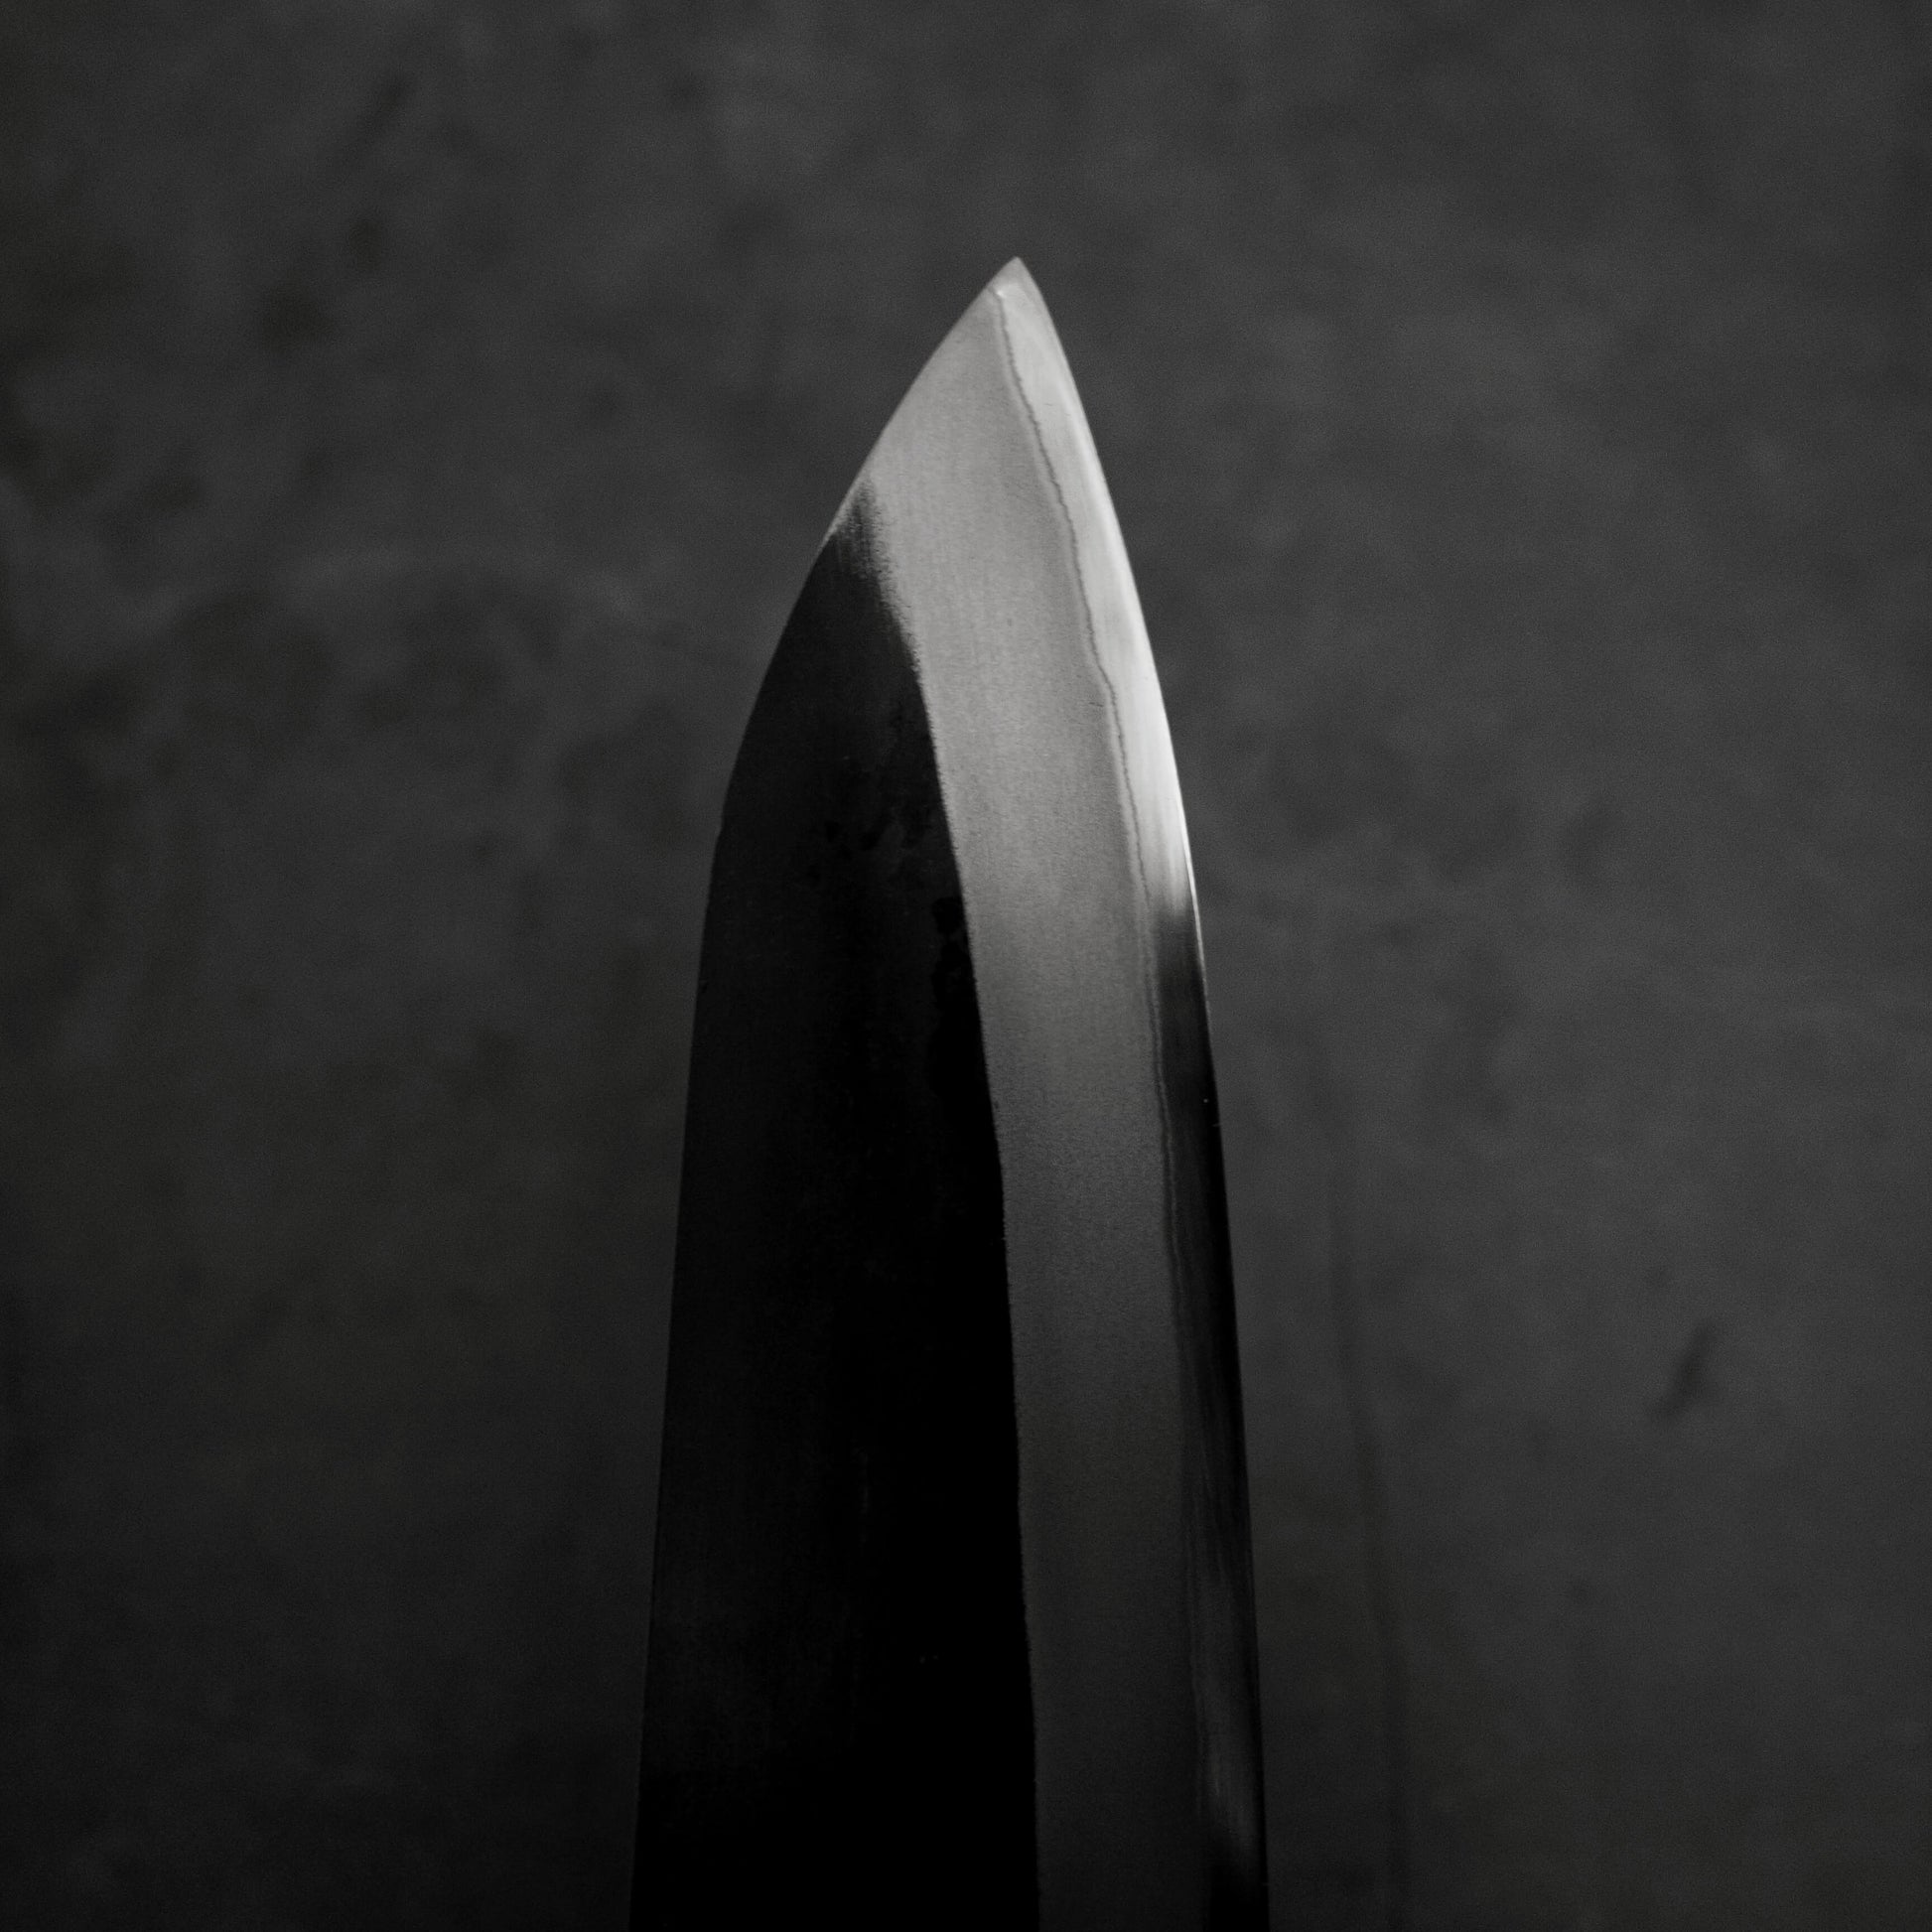 Toyama kurouchi aogami#2 gyuto 210mm - Zahocho Japanese Knives